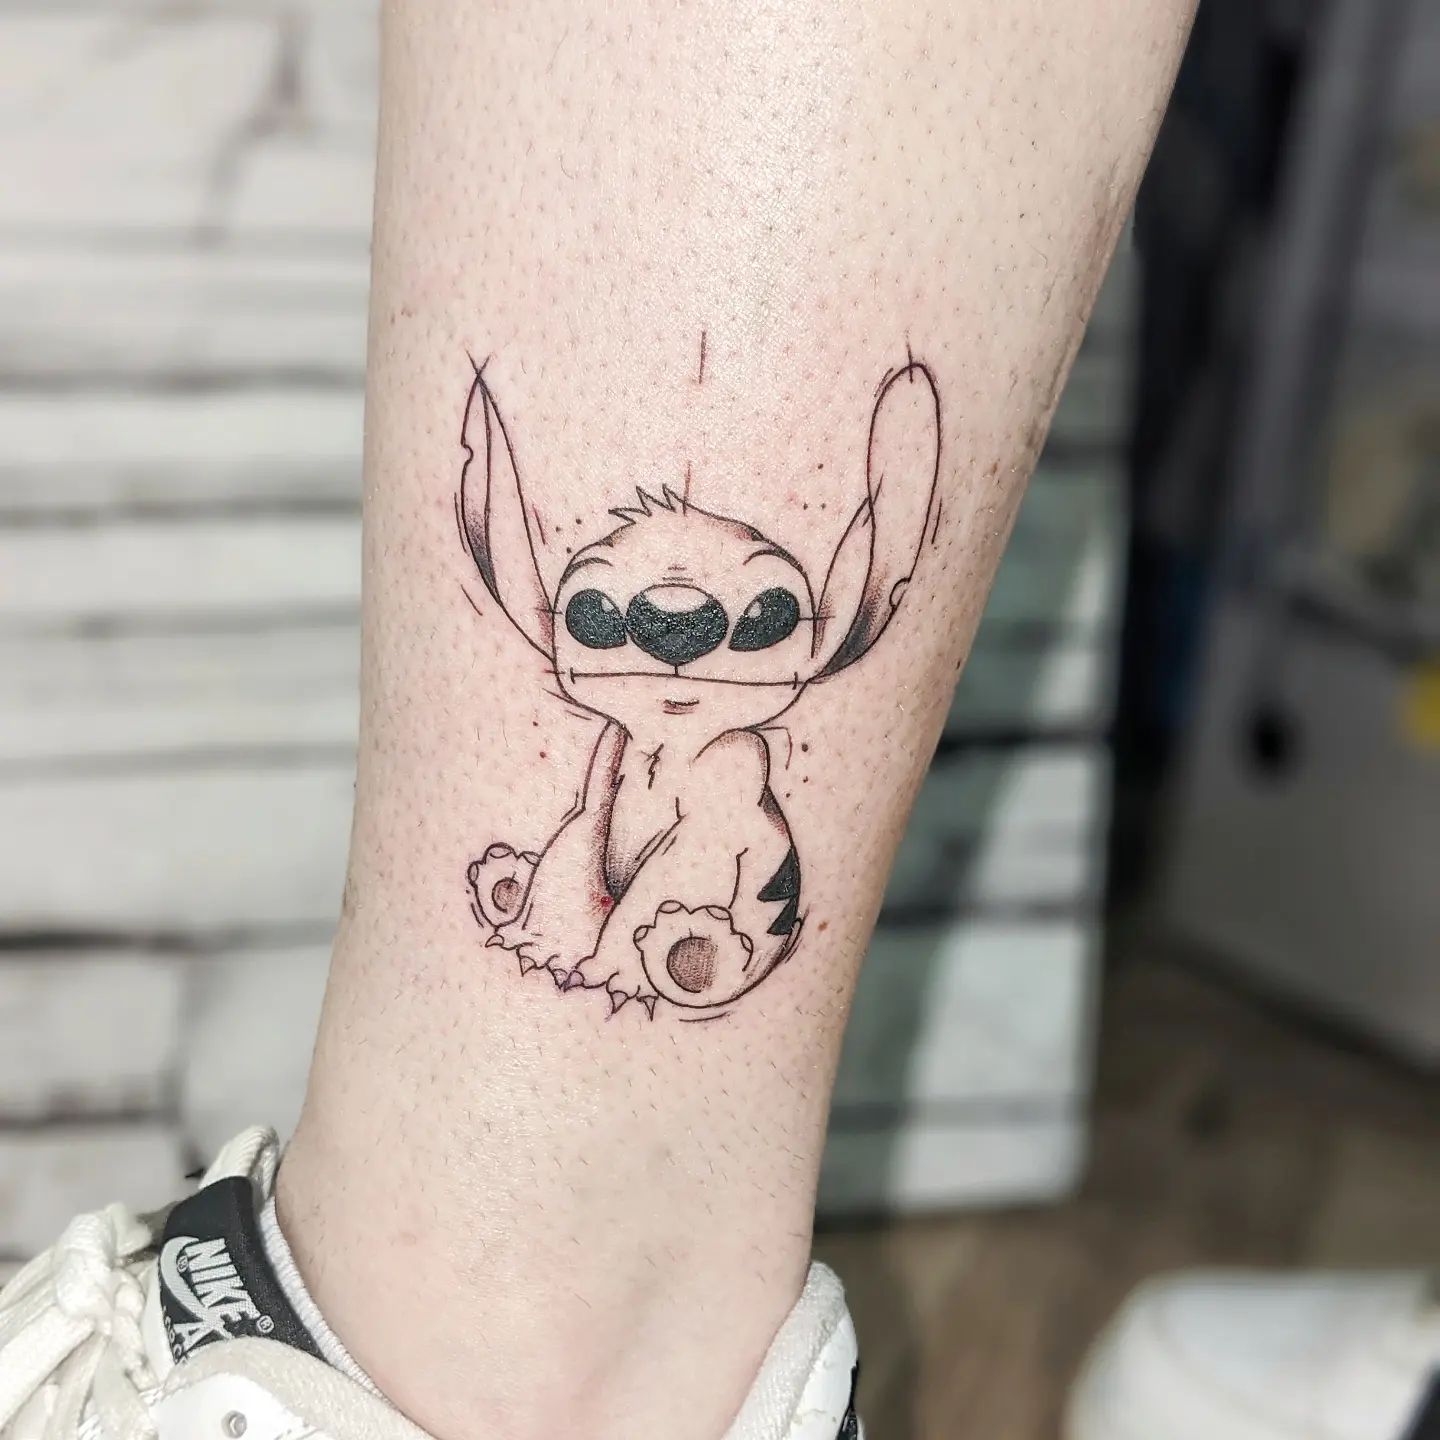 Tatuaje de Stitch con tinta negra.